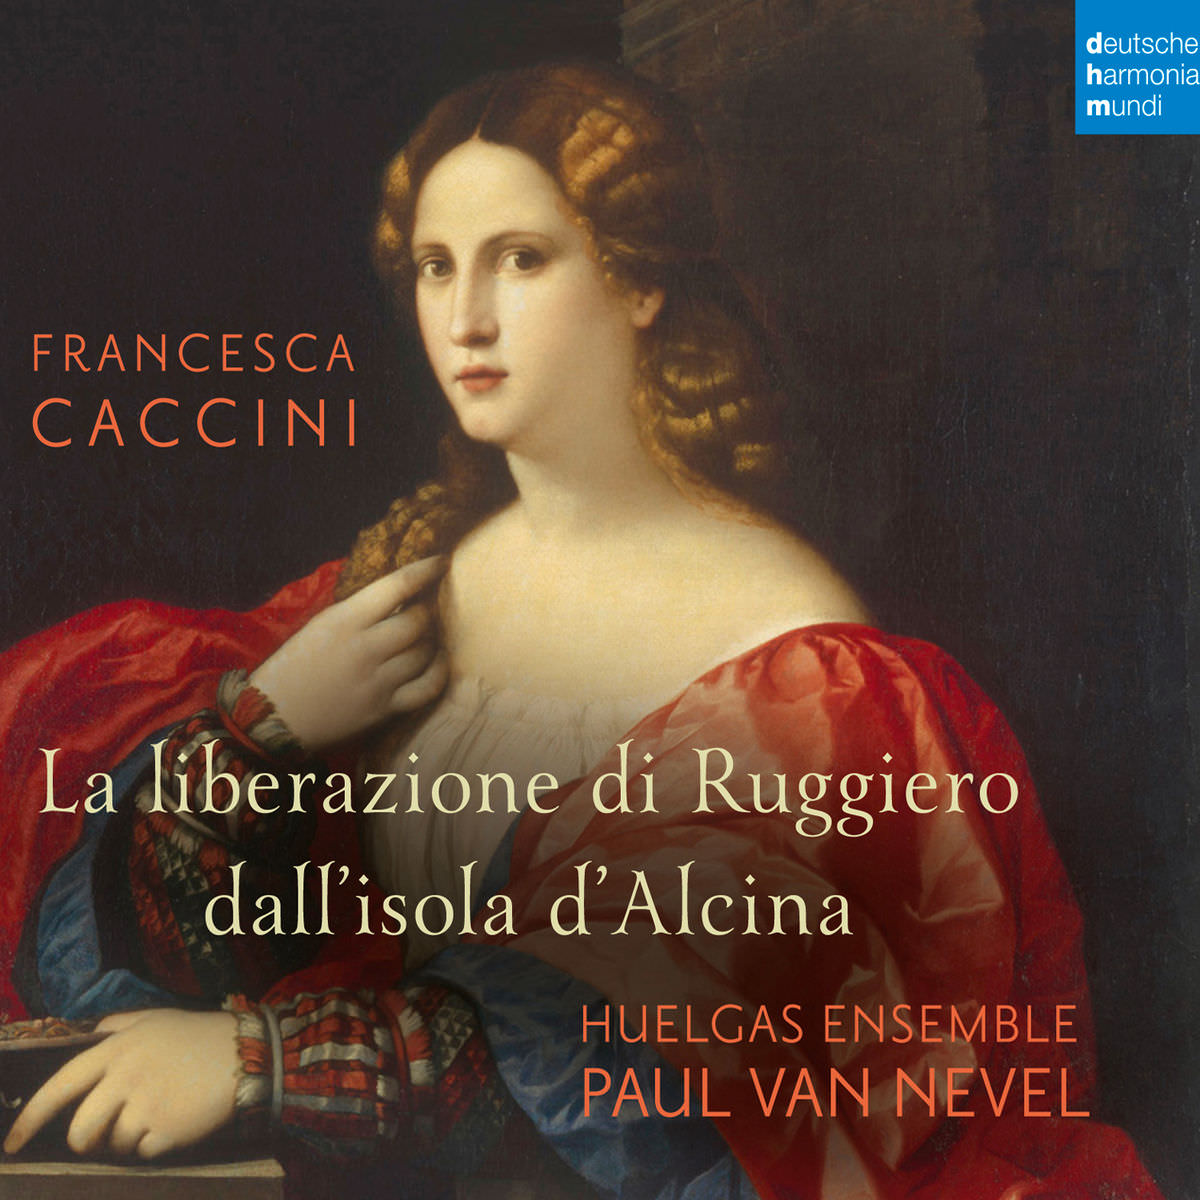 Huelgas Ensemble - Francesca Caccini: La liberazione di Ruggiero dall’isola d’Alcina (2018) [FLAC 24bit/96kHz]